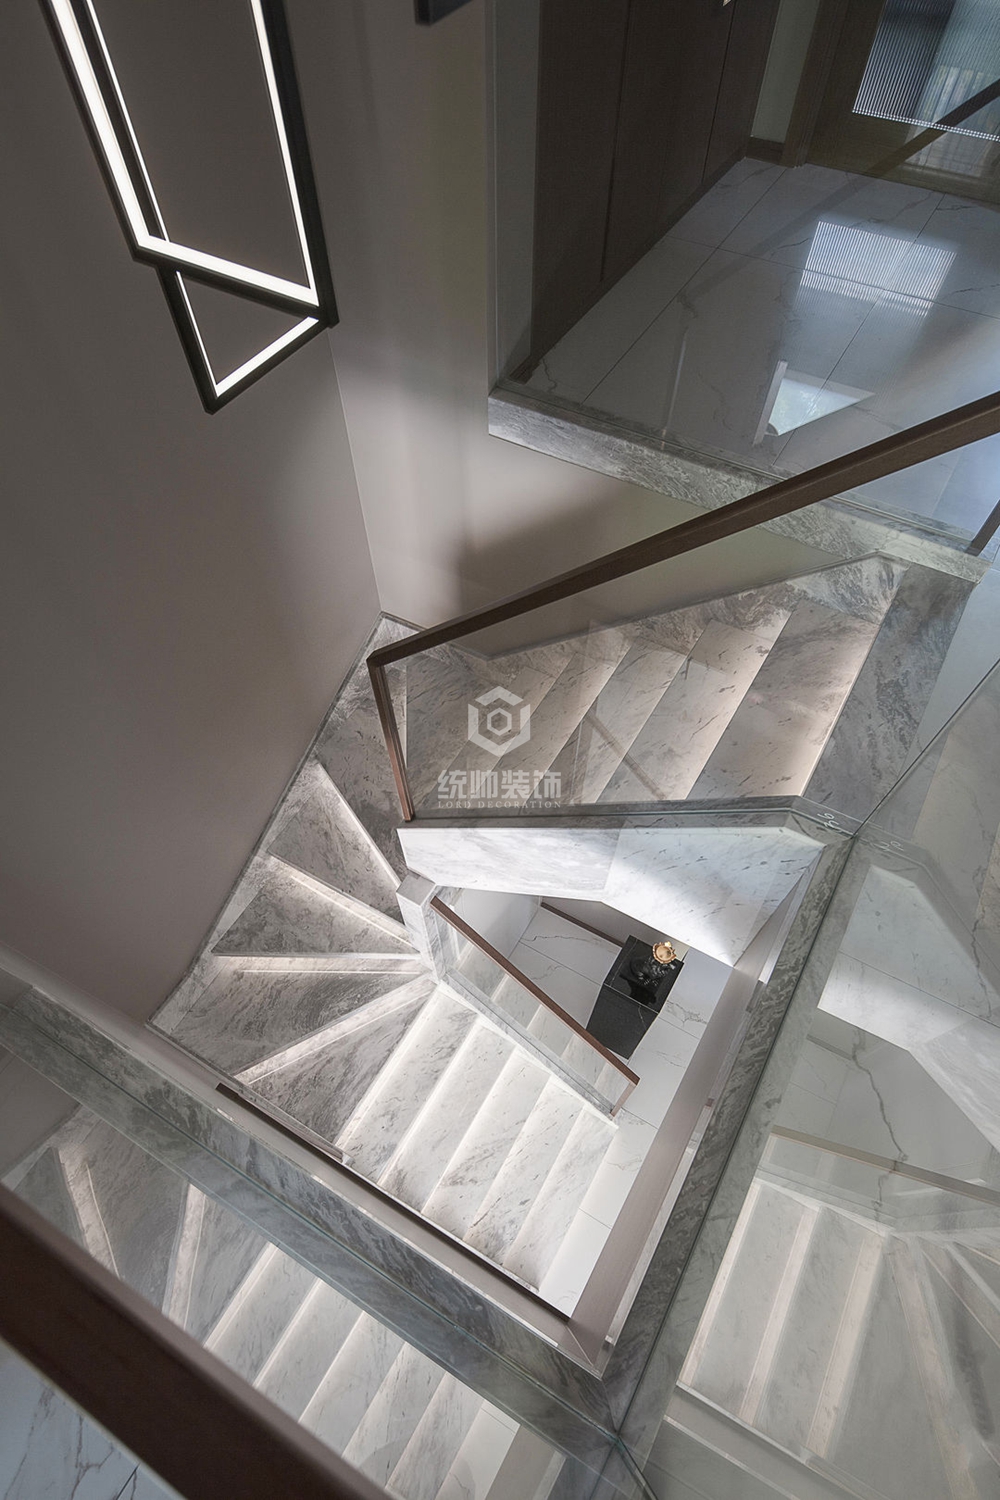 嘉定区澳丽印象家园 130平现代简约楼梯间装修效果图